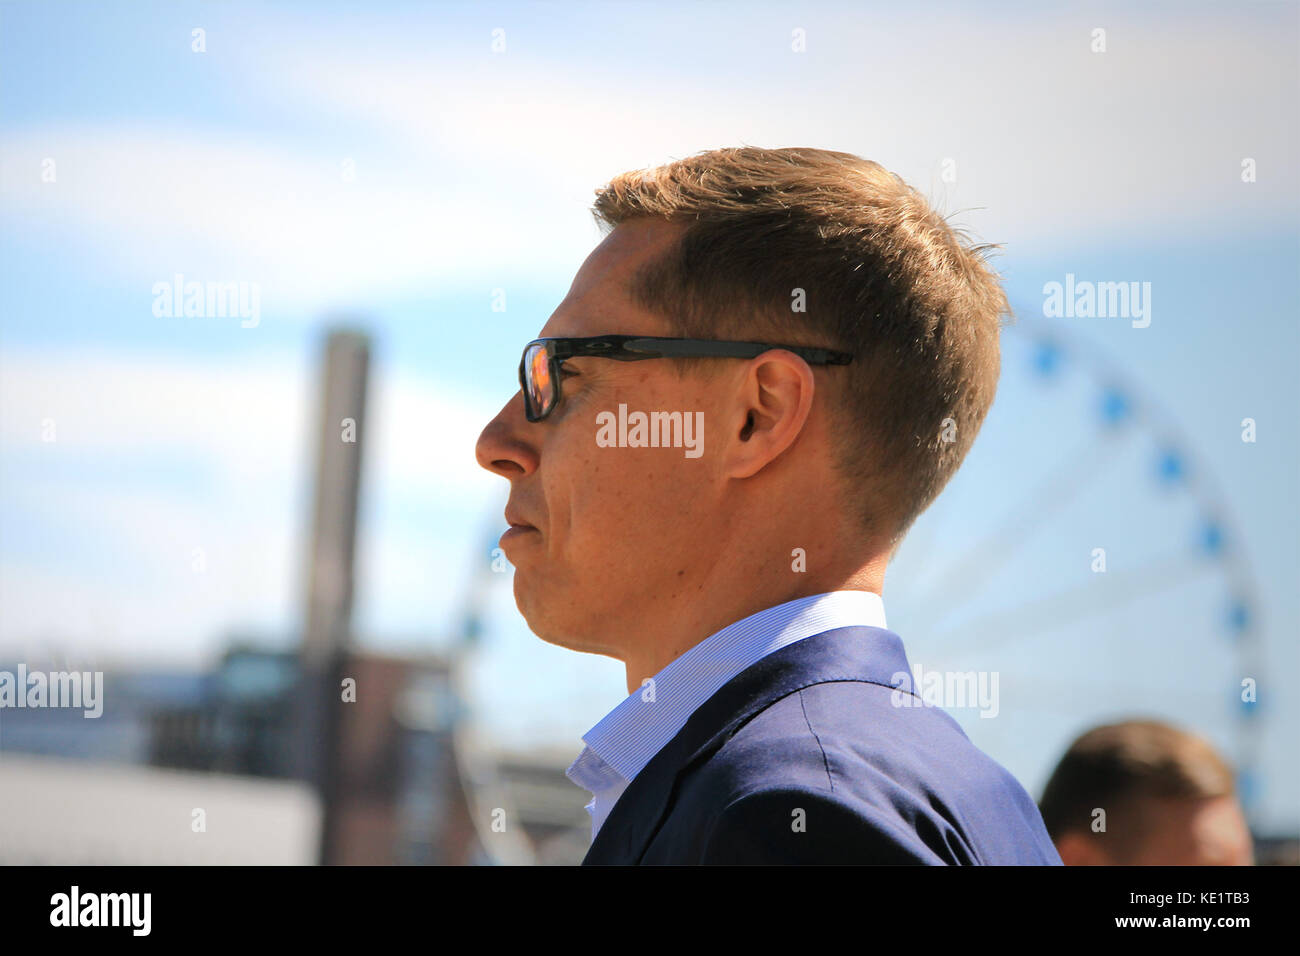 Helsinki, Finlandia - Junio 15, 2016: el político finlandés, ex miembro de la Unión Europea y ex primer ministro de Finlandia, Alexander Stubb en estrecha perfil. s Foto de stock